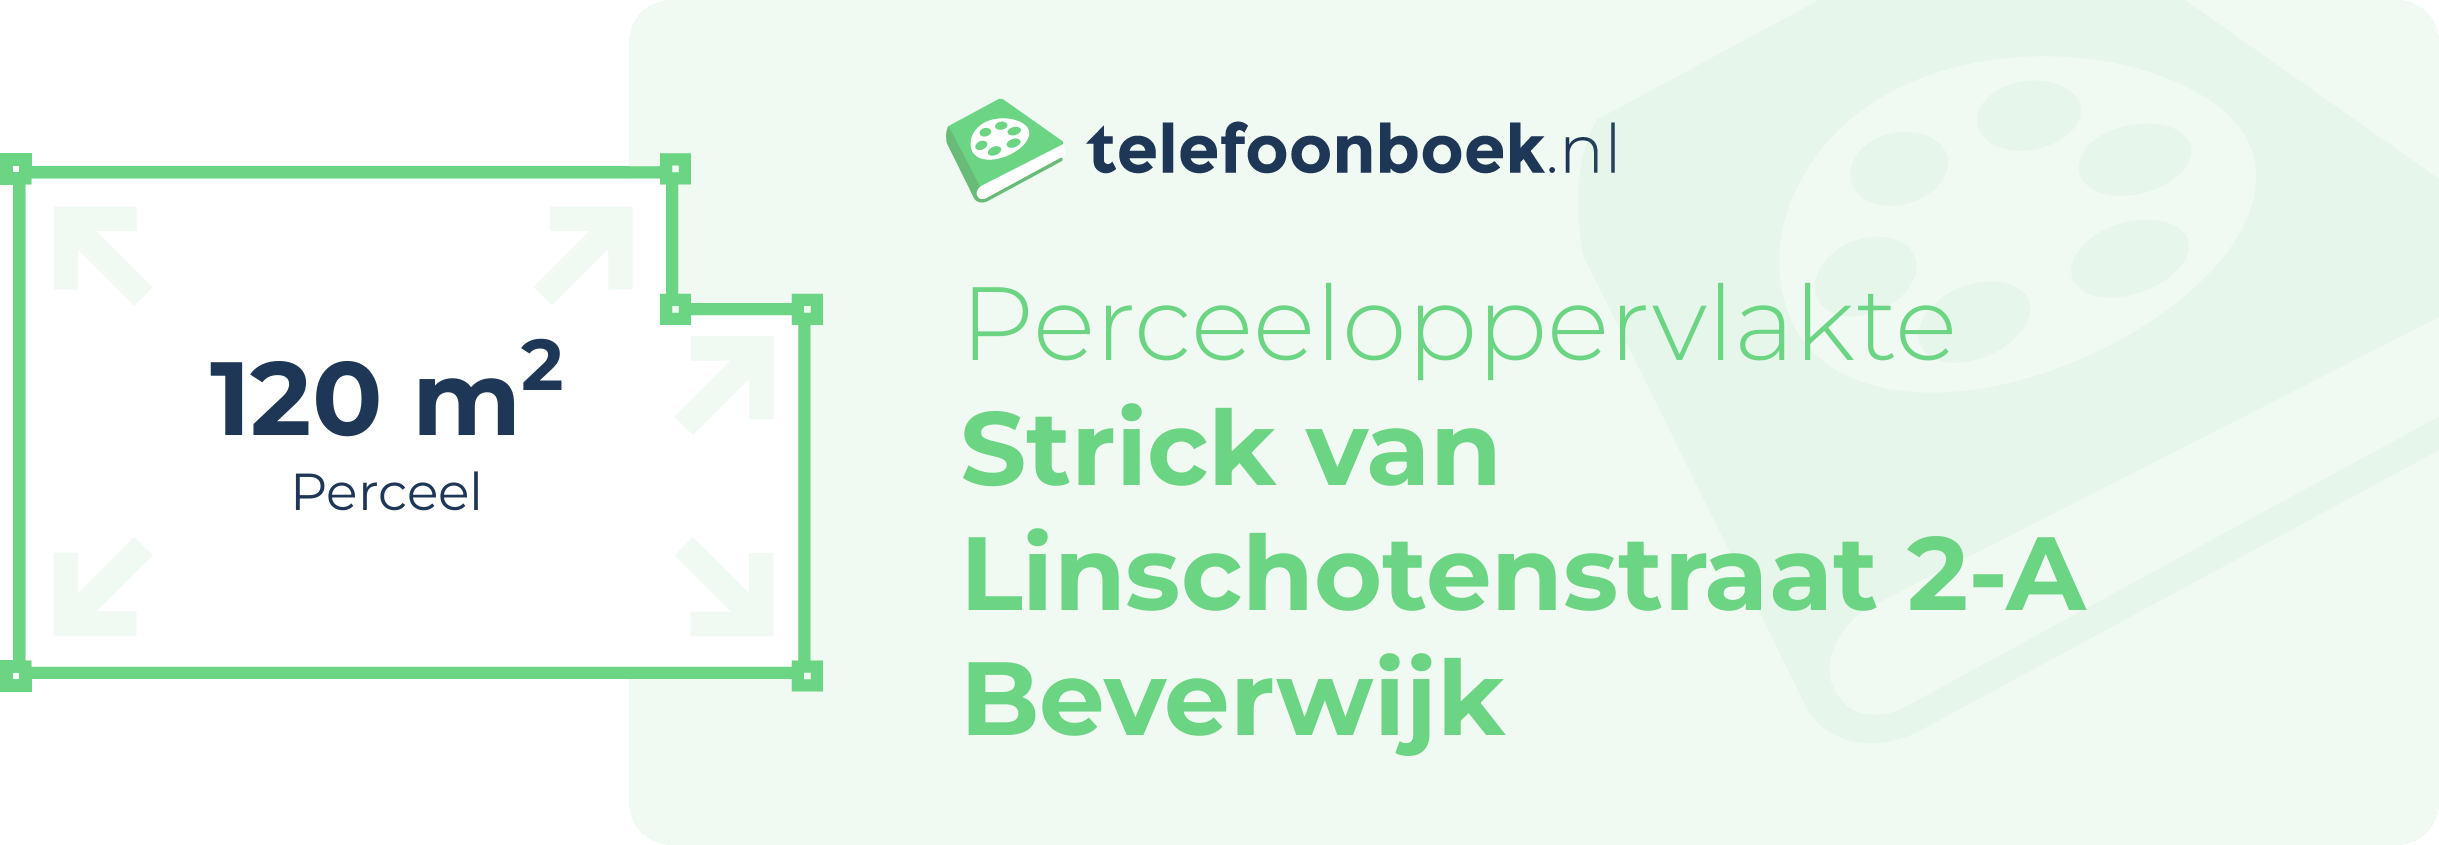 Perceeloppervlakte Strick Van Linschotenstraat 2-A Beverwijk